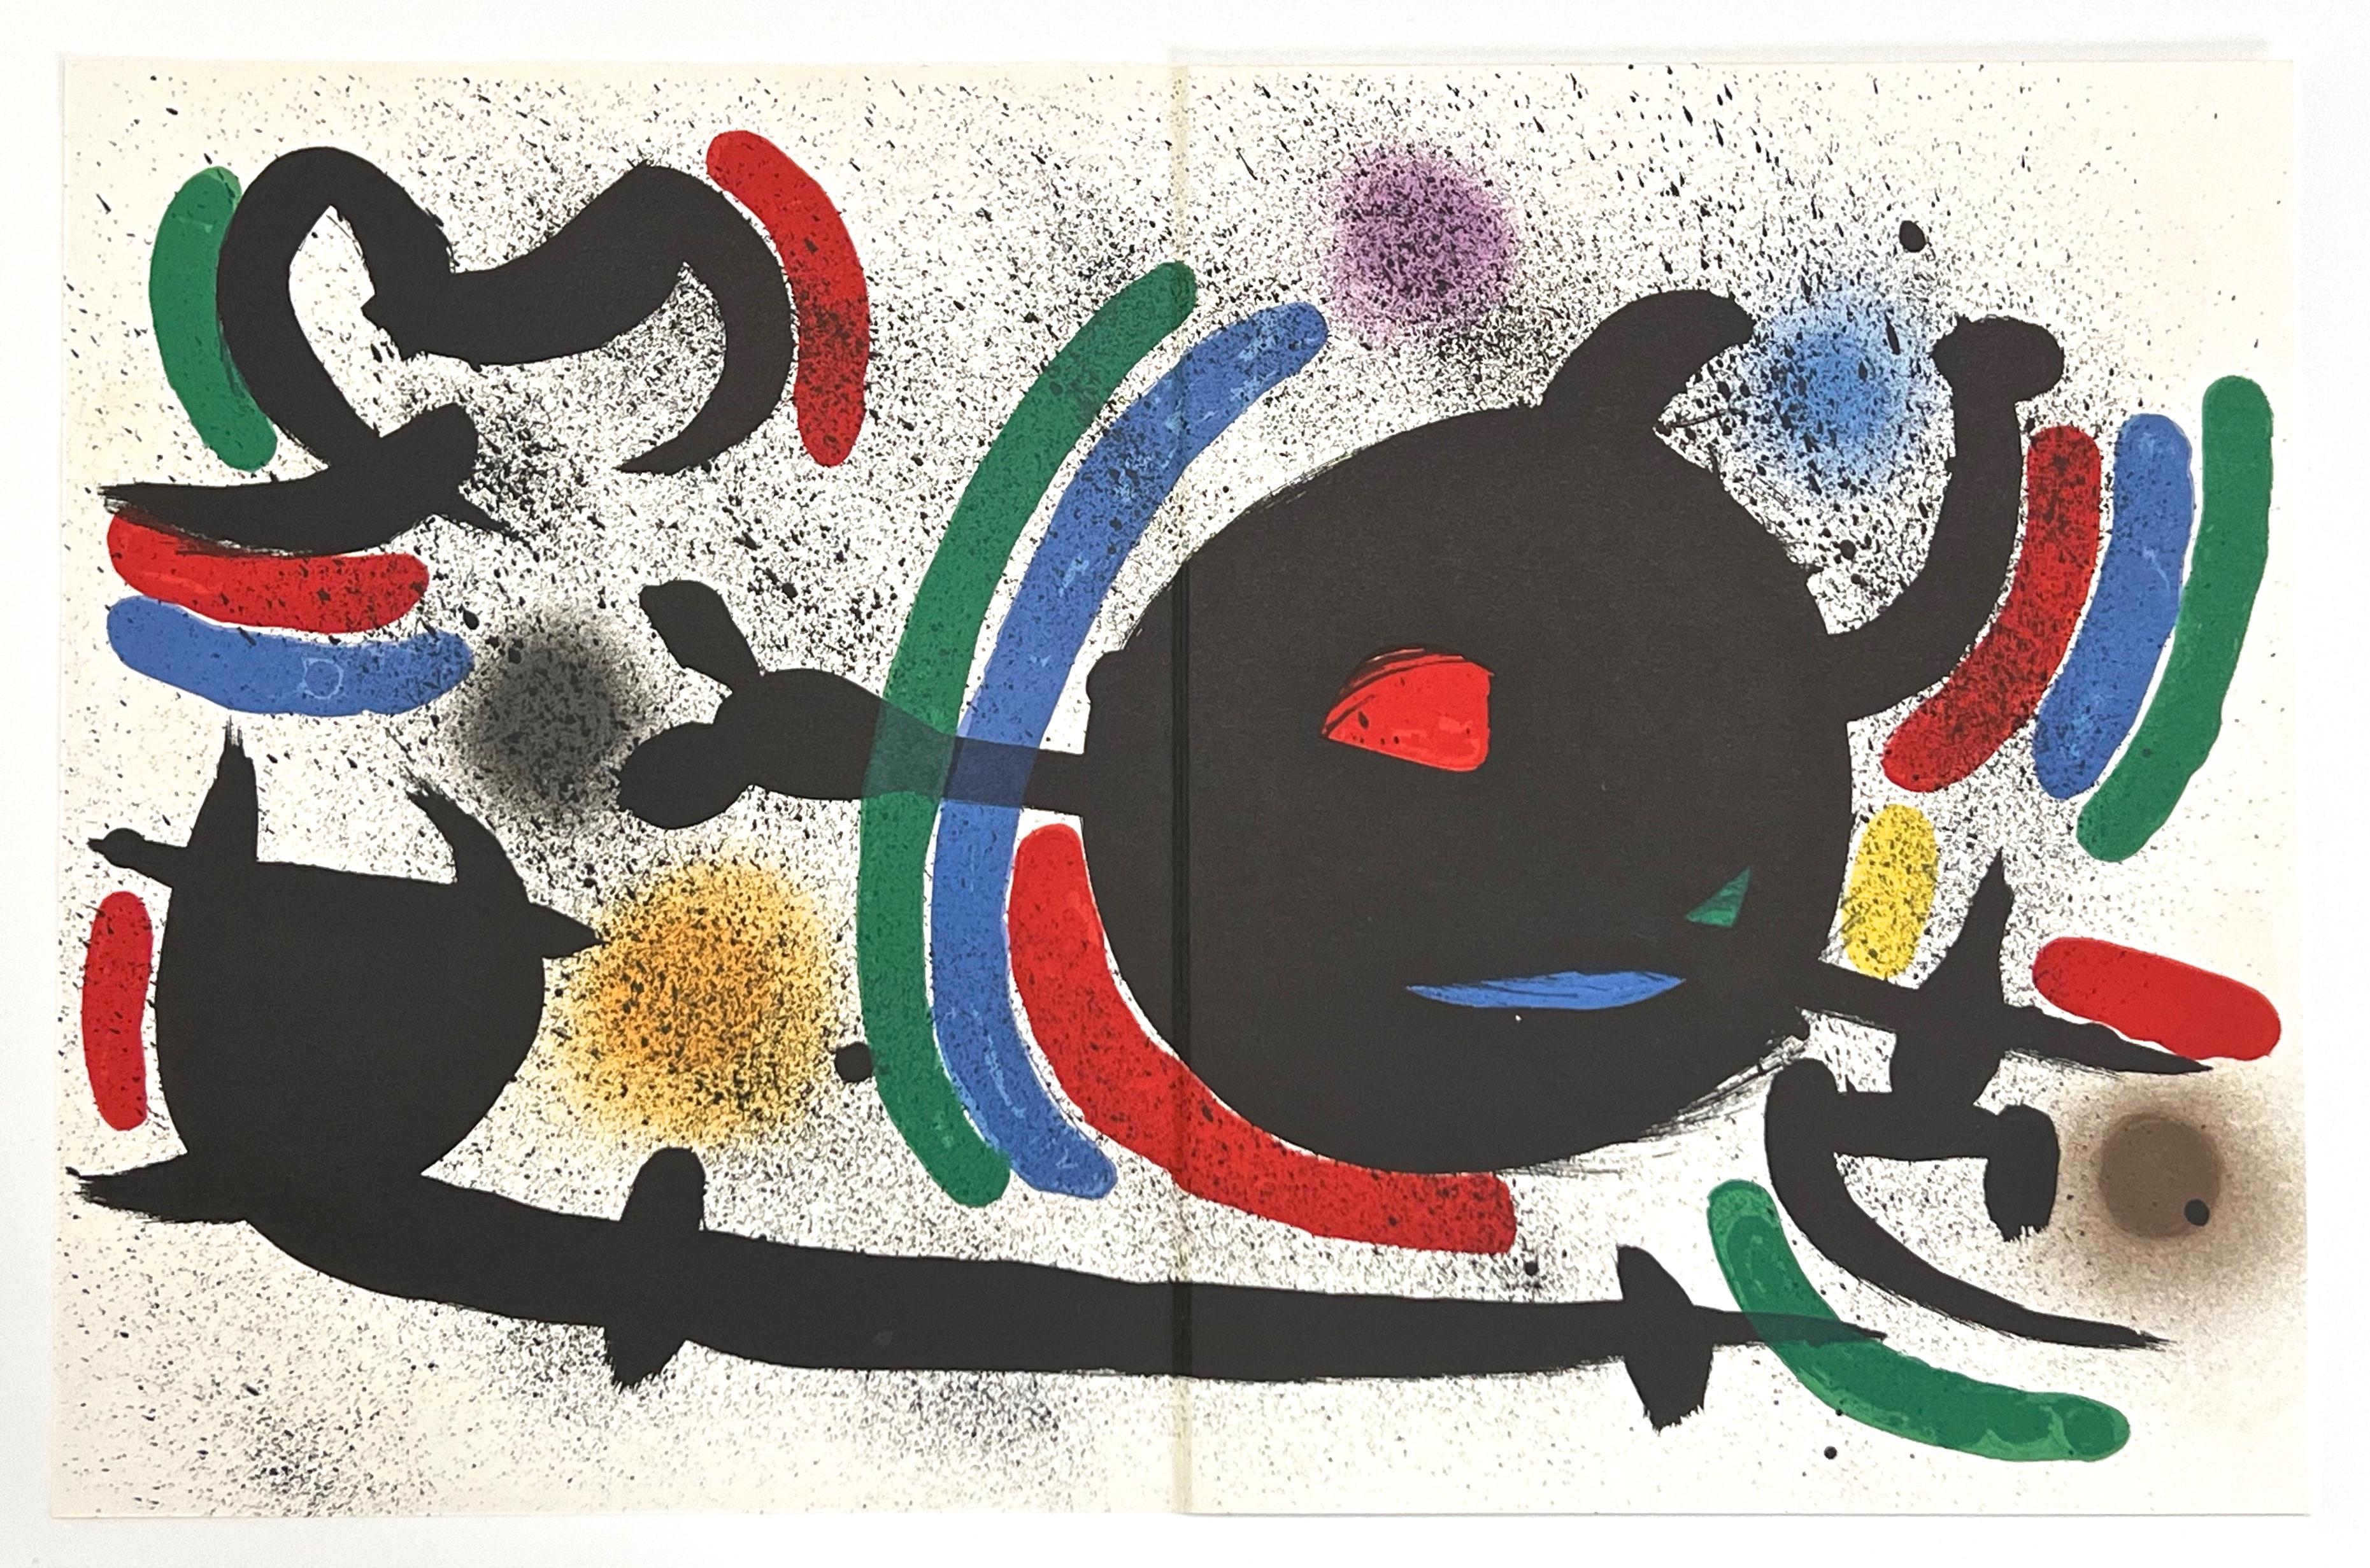 Original Lithograph X - Print by Joan Miró